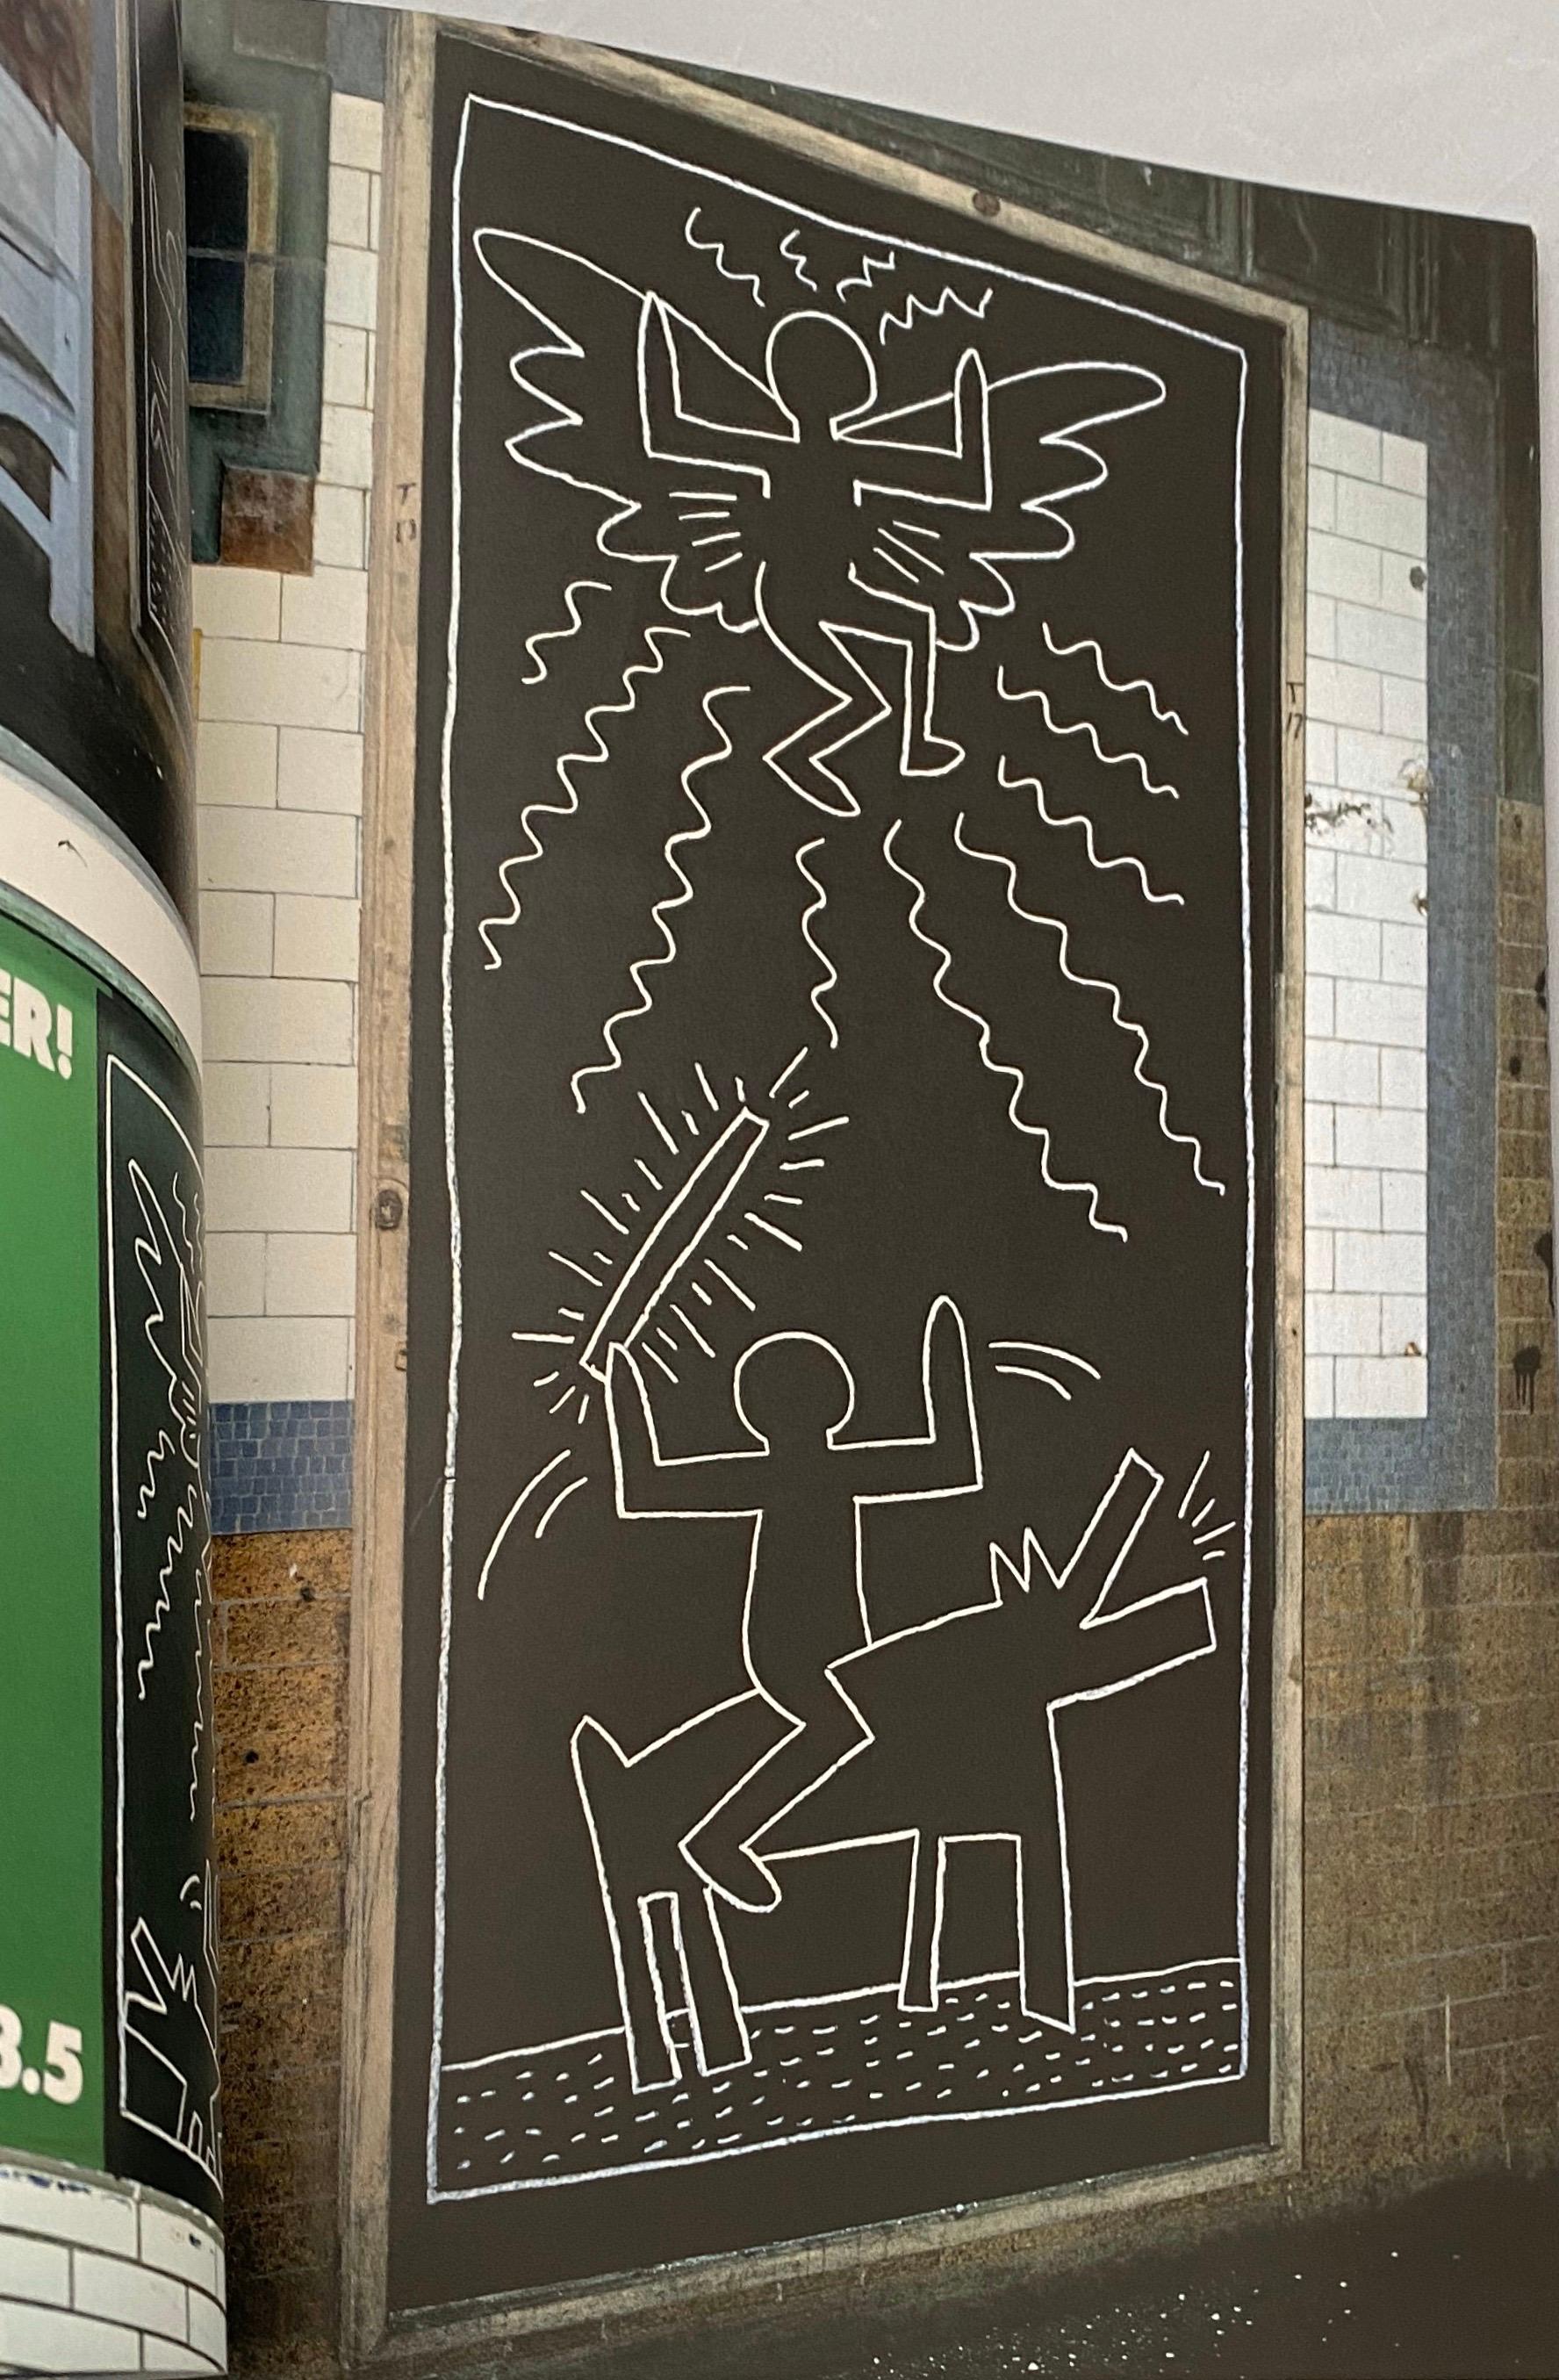 Keith Haring 1984 :
Keith Haring, Art in Transit : Dessins du métro avec des photos de Tseng Kwong Chi :

Cette monographie de 1984 de Keith Haring, très collectionnée et bien conservée, examine les dessins à la craie historiques et fondamentaux